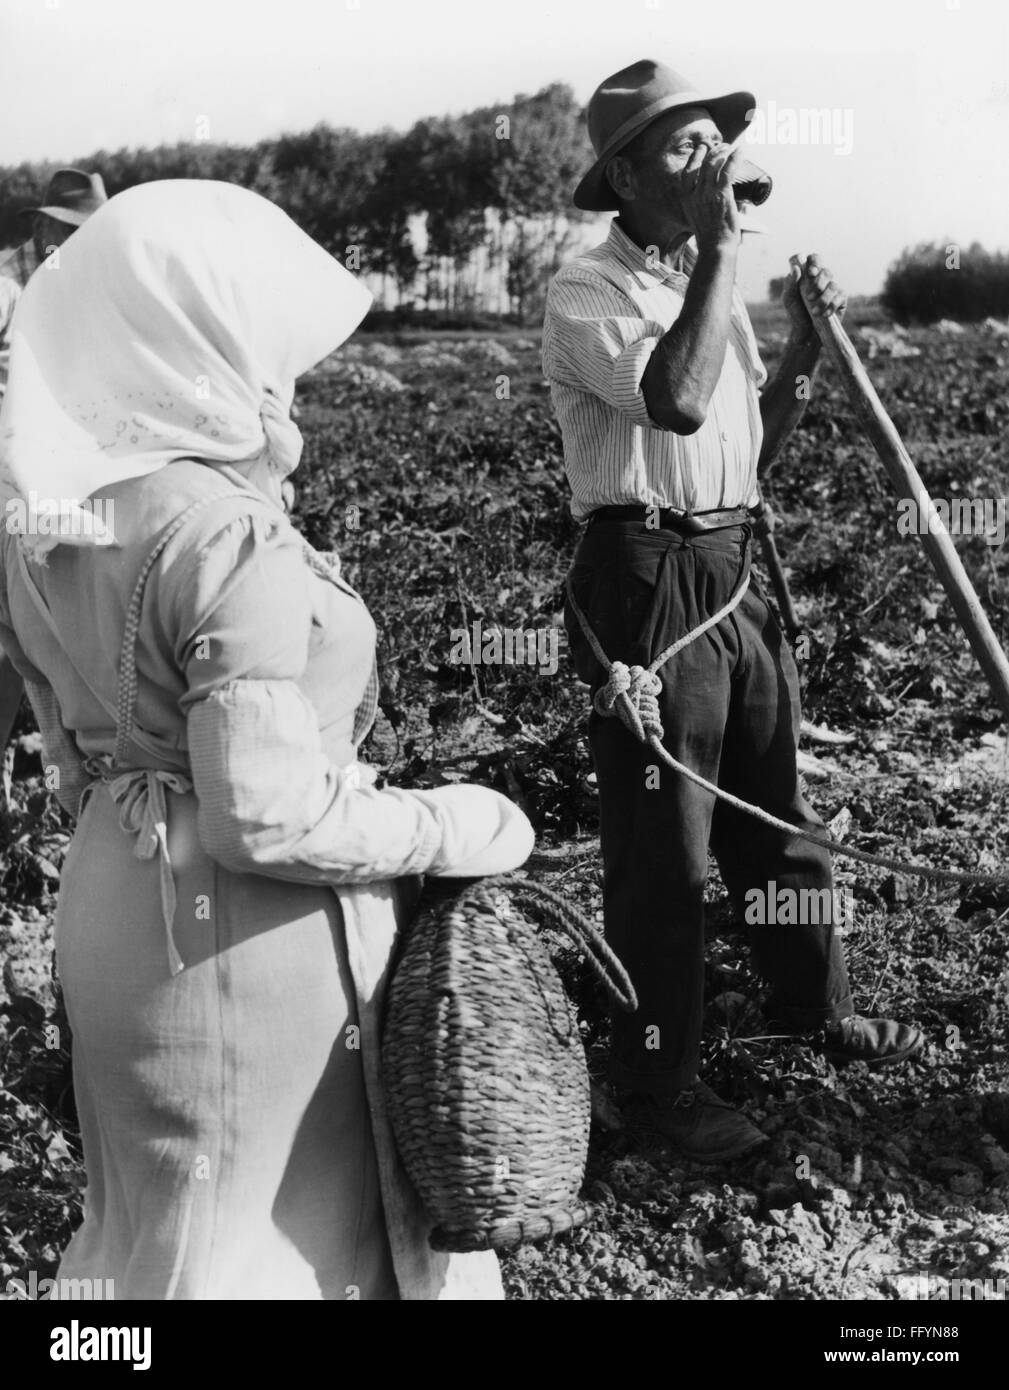 Agricoltura, raccolto, pausa durante il lavoro, Valle Padana, anni '50, diritti aggiuntivi-clearences-non disponibile Foto Stock